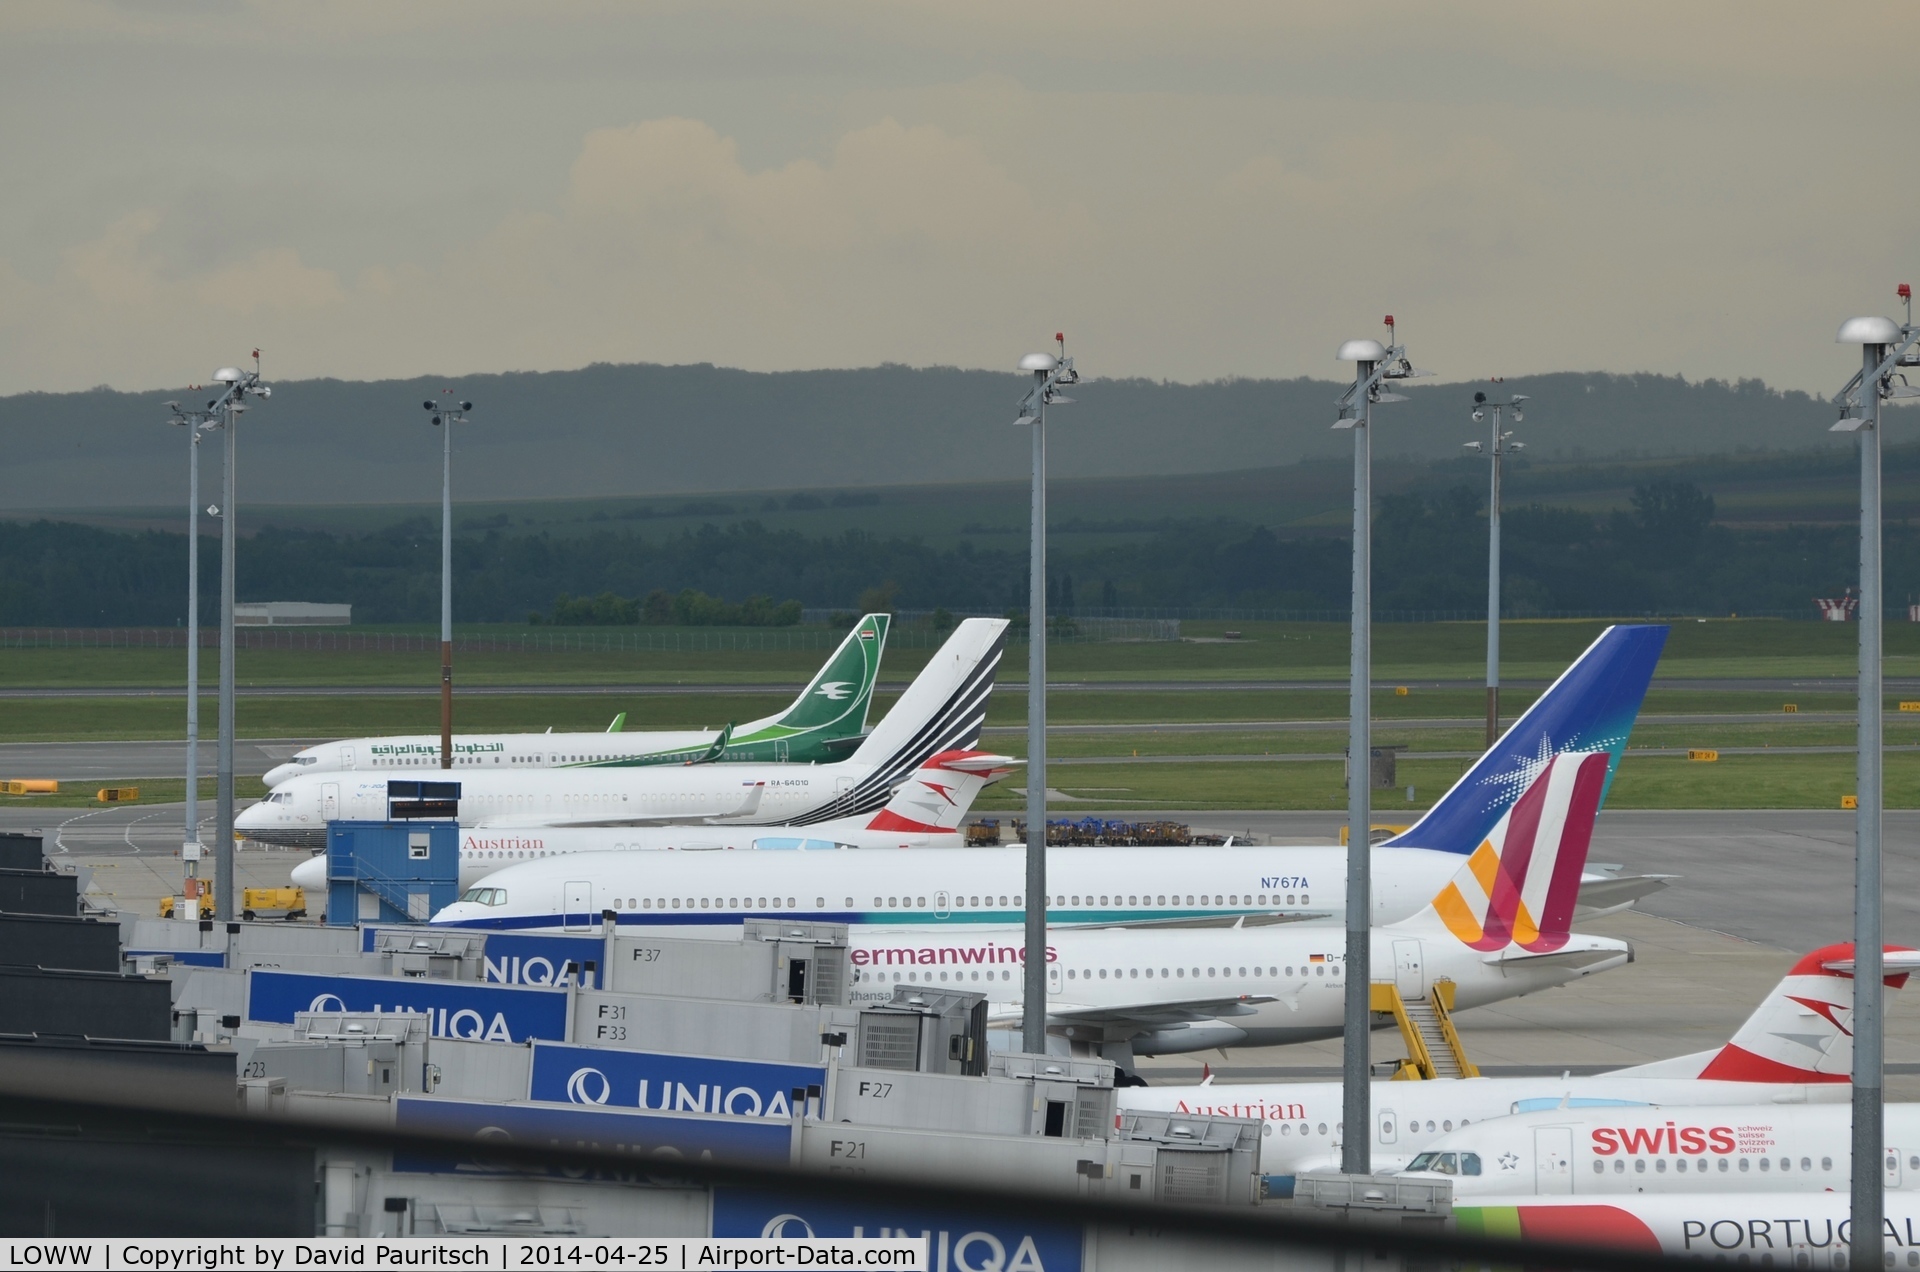 Vienna International Airport, Vienna Austria (LOWW) - Sooo many Special Visitors!